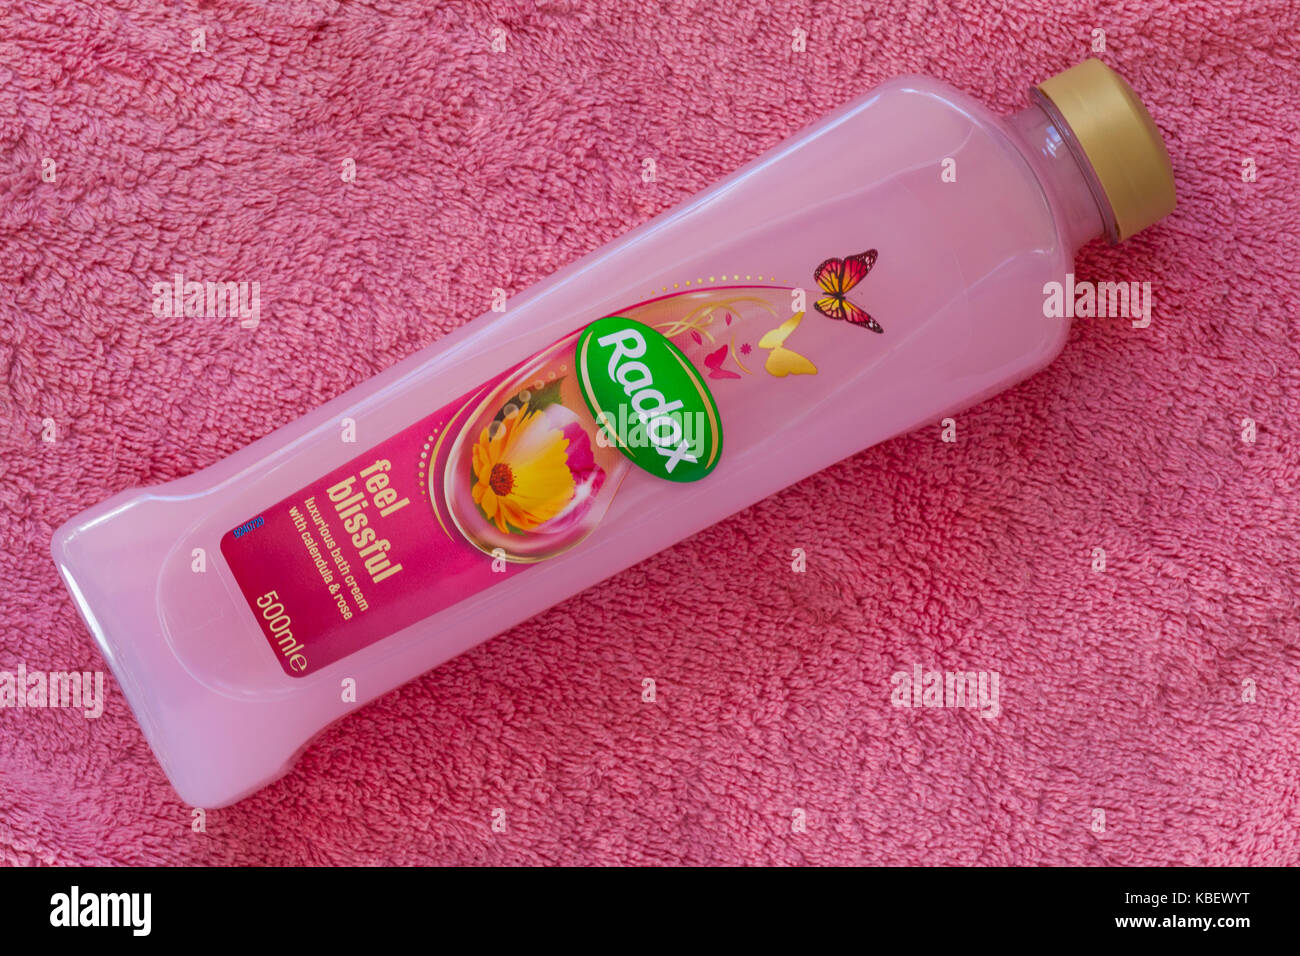 Bouteille de Radox sentir extatique avec calendula crème de bain de luxe & rose sur serviette rose Banque D'Images